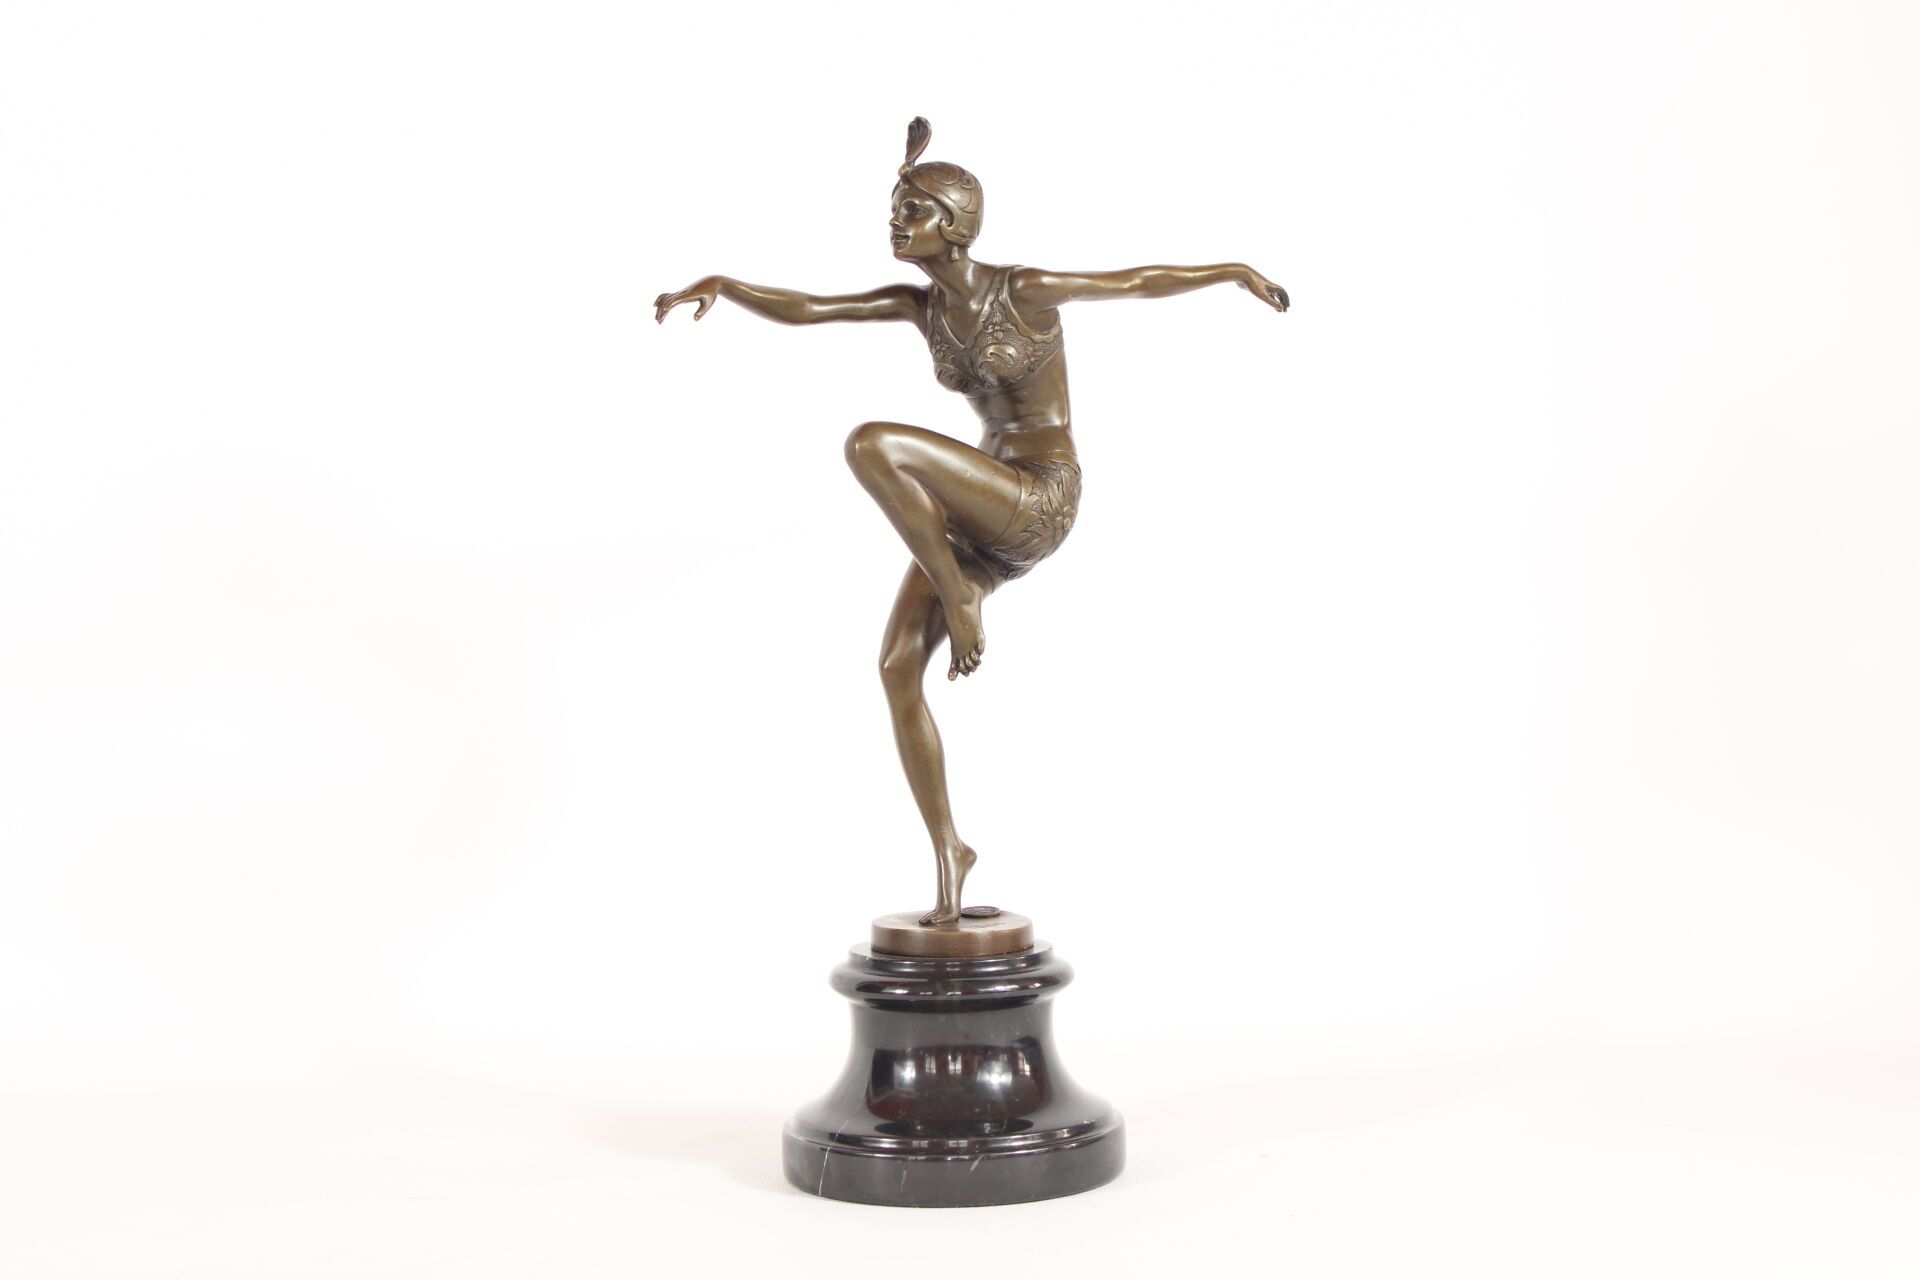 Null 巴黎，费迪南德根据
咆哮的二十年代舞者》，青铜，大理石底座。有青铜印章签名。现代印花。
带底座高度：38 厘米